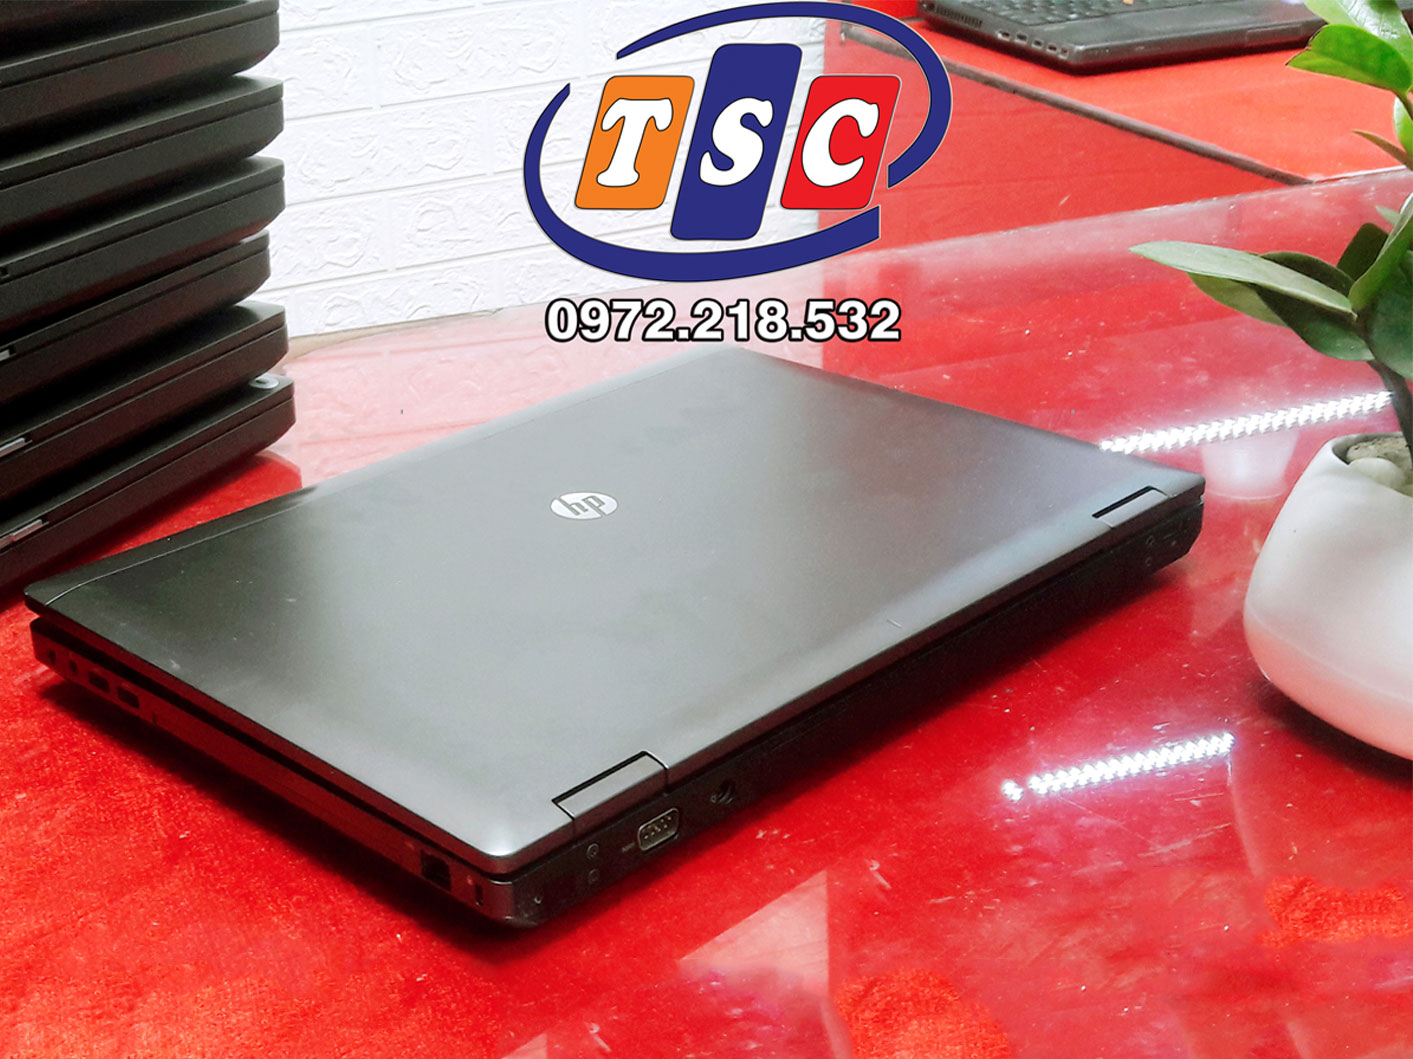 Laptop Hp Probook 6570b i5-3230M | RAM 4GB | HDD 250GB | 15.6” HD | VGA Rời HD 7570M